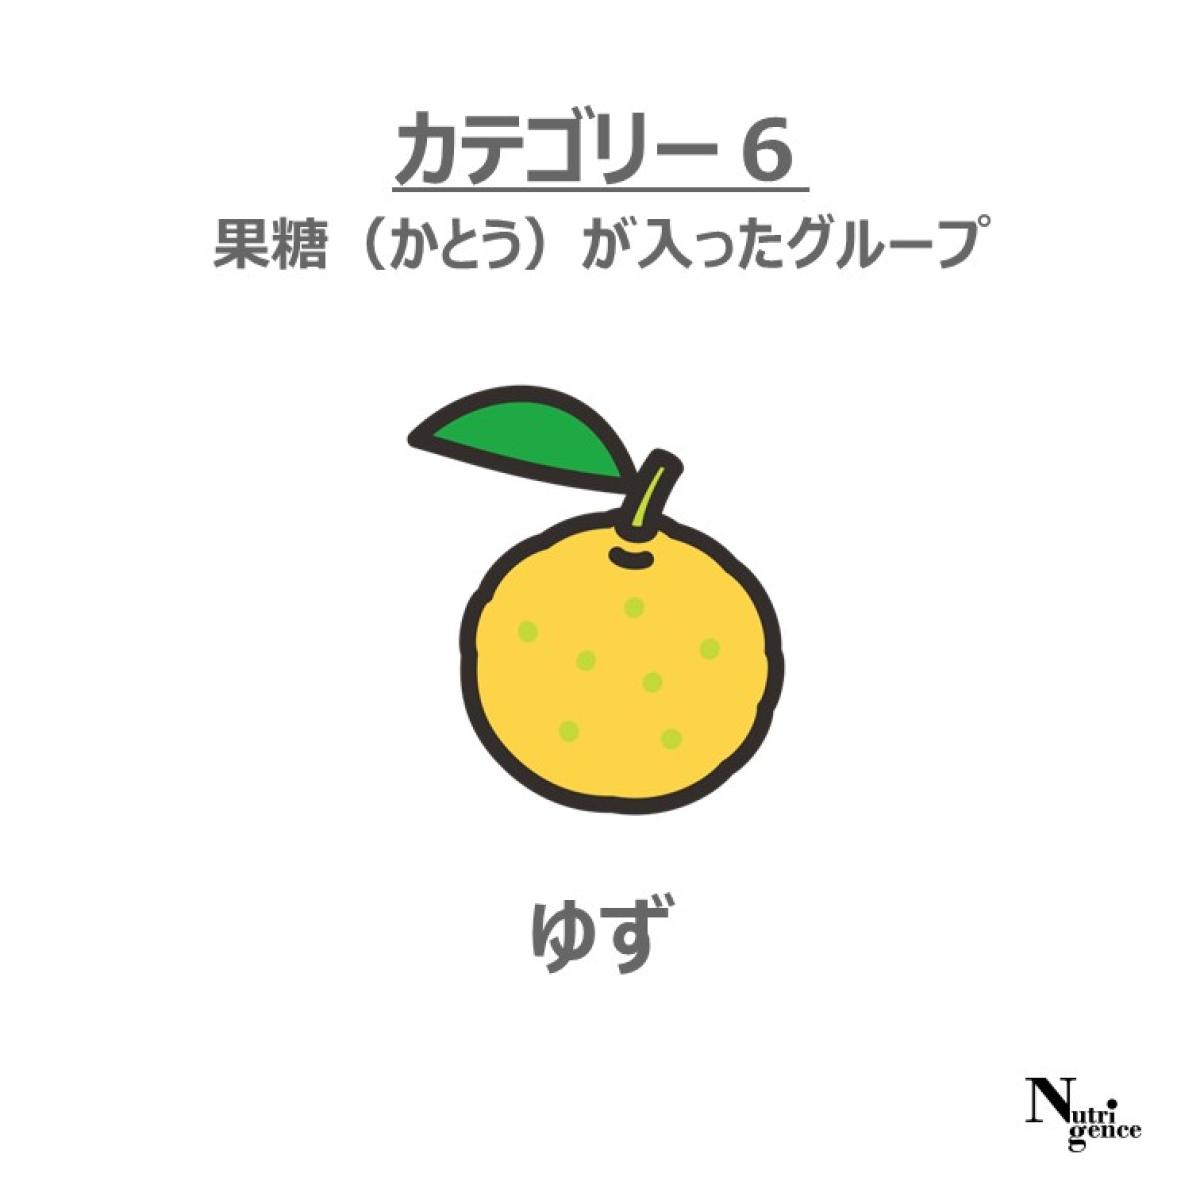 柚子は食品カテゴリーマップのカテゴリー6に分類、カテゴリー6は果糖を含む食品が該当